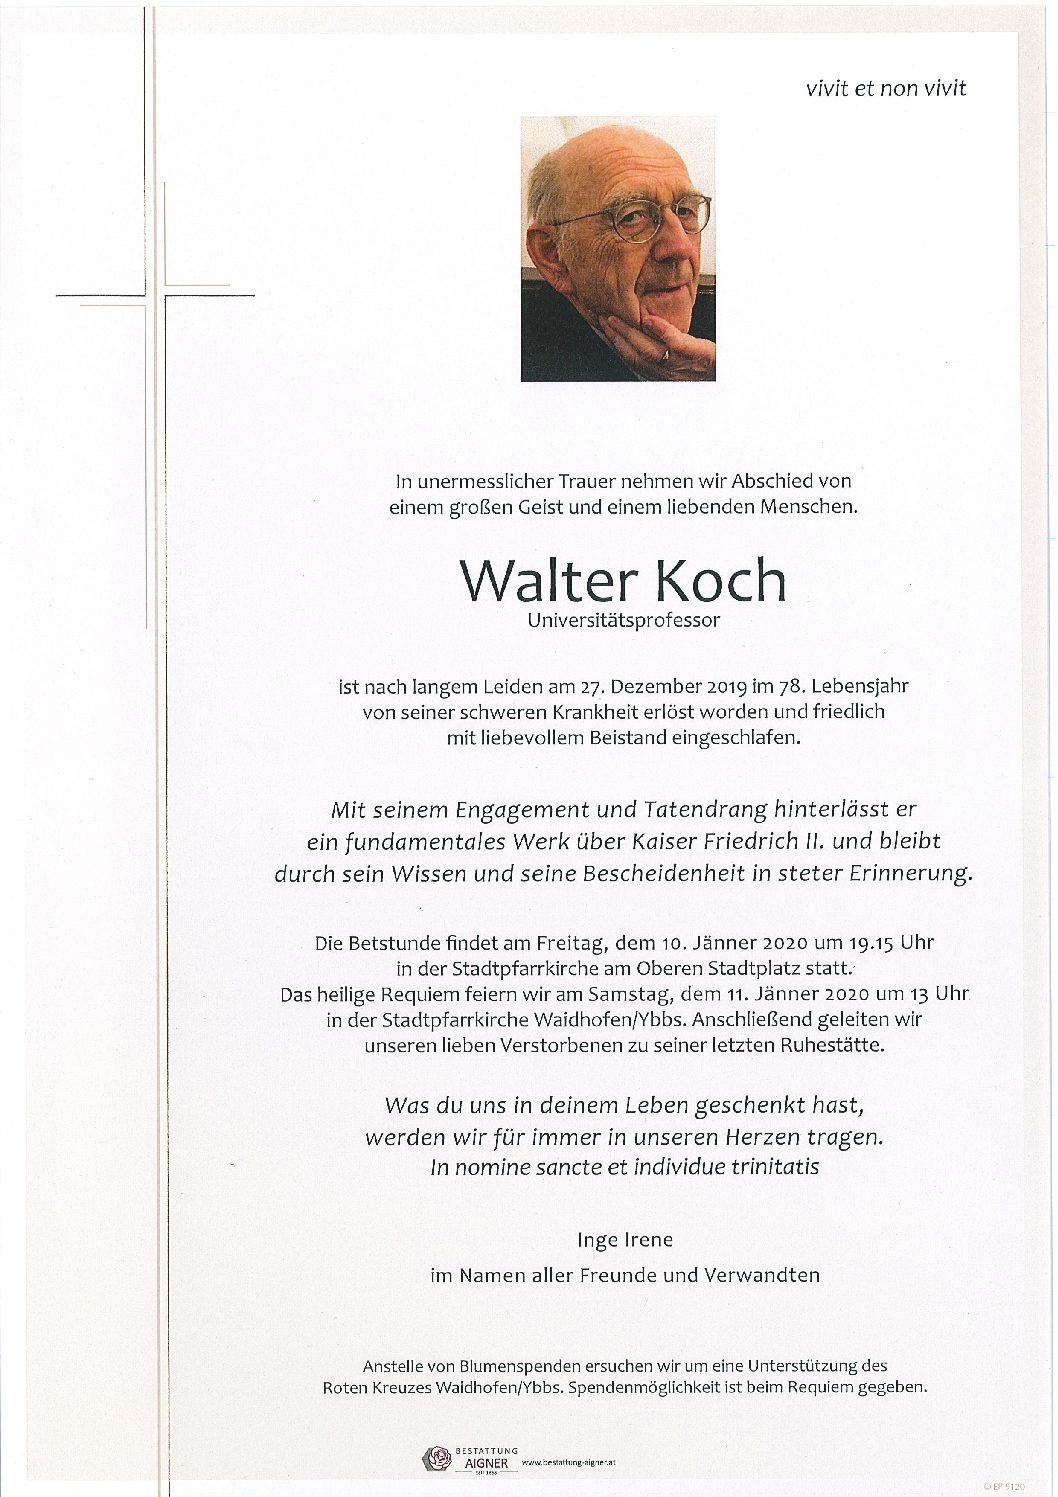 Walter Koch